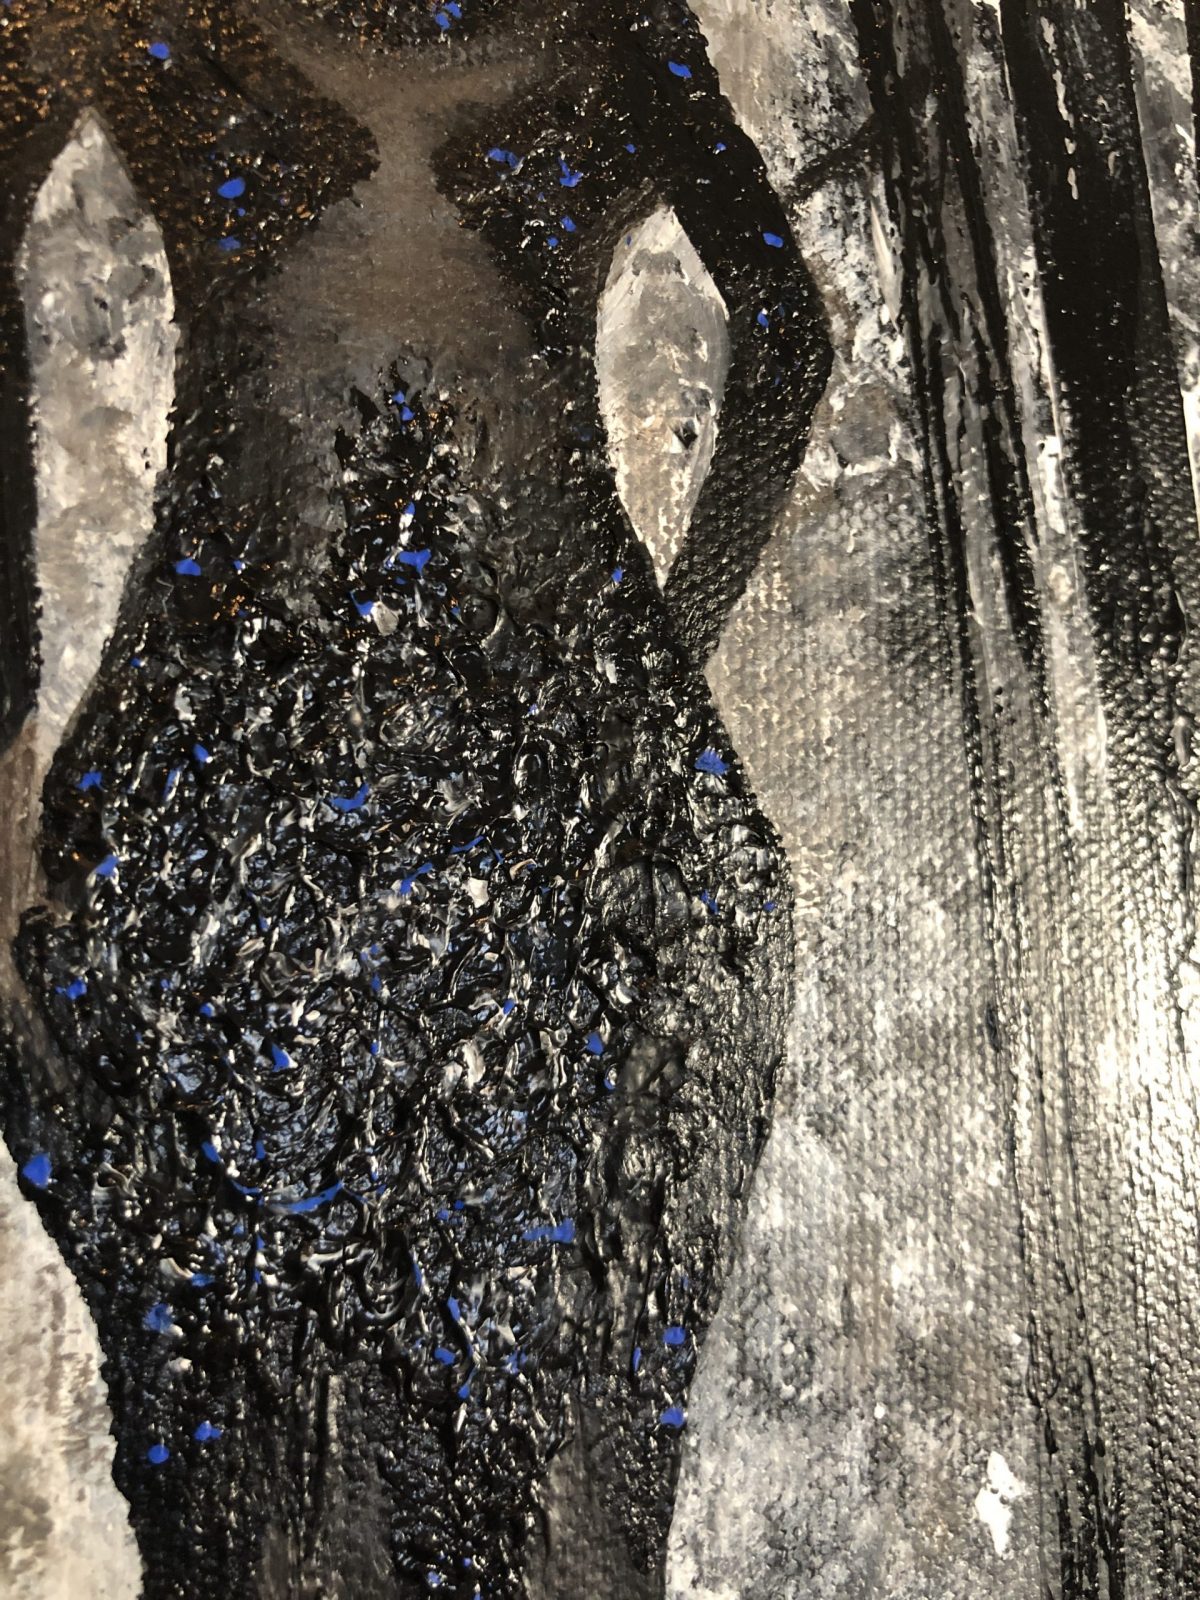 gros plan sur la splendide robe de la femme - La veuve noire - peinture acrylique réalisé au couteau présentant une veuve noire entrant dans une forêt en noir et blanc